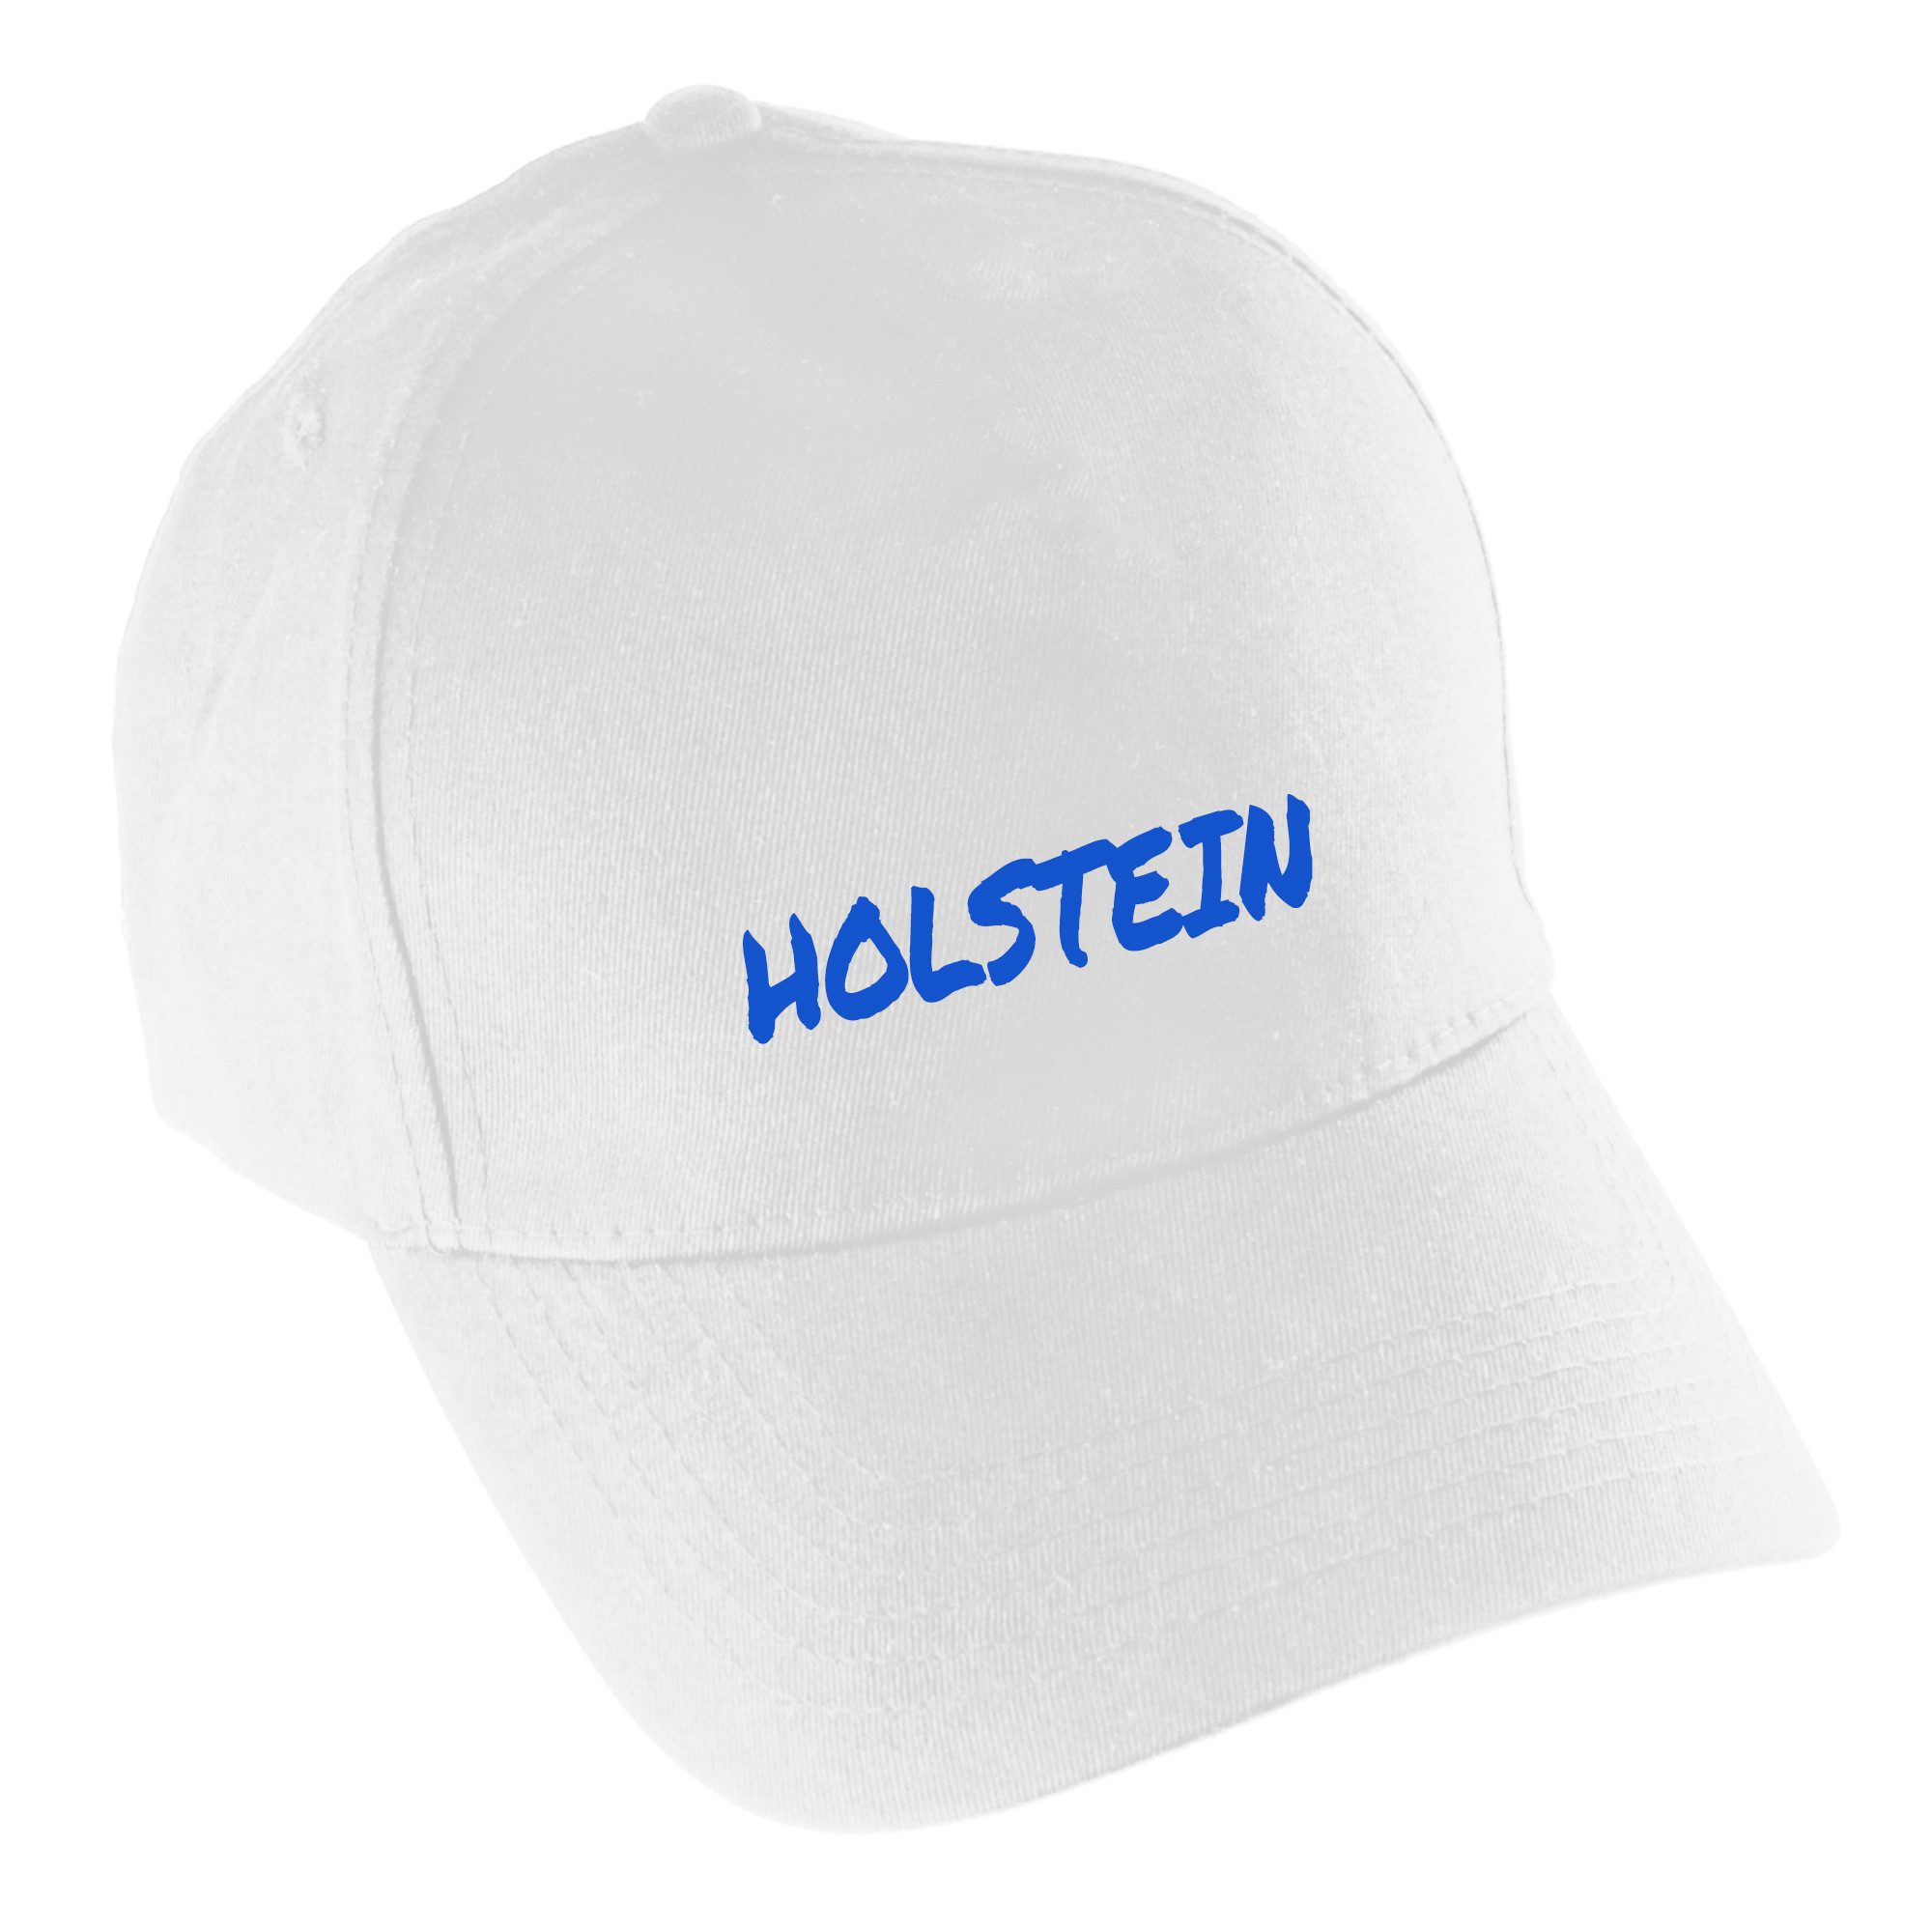 multifanshop Baseball Cap Holstein - Textmarker - Mütze